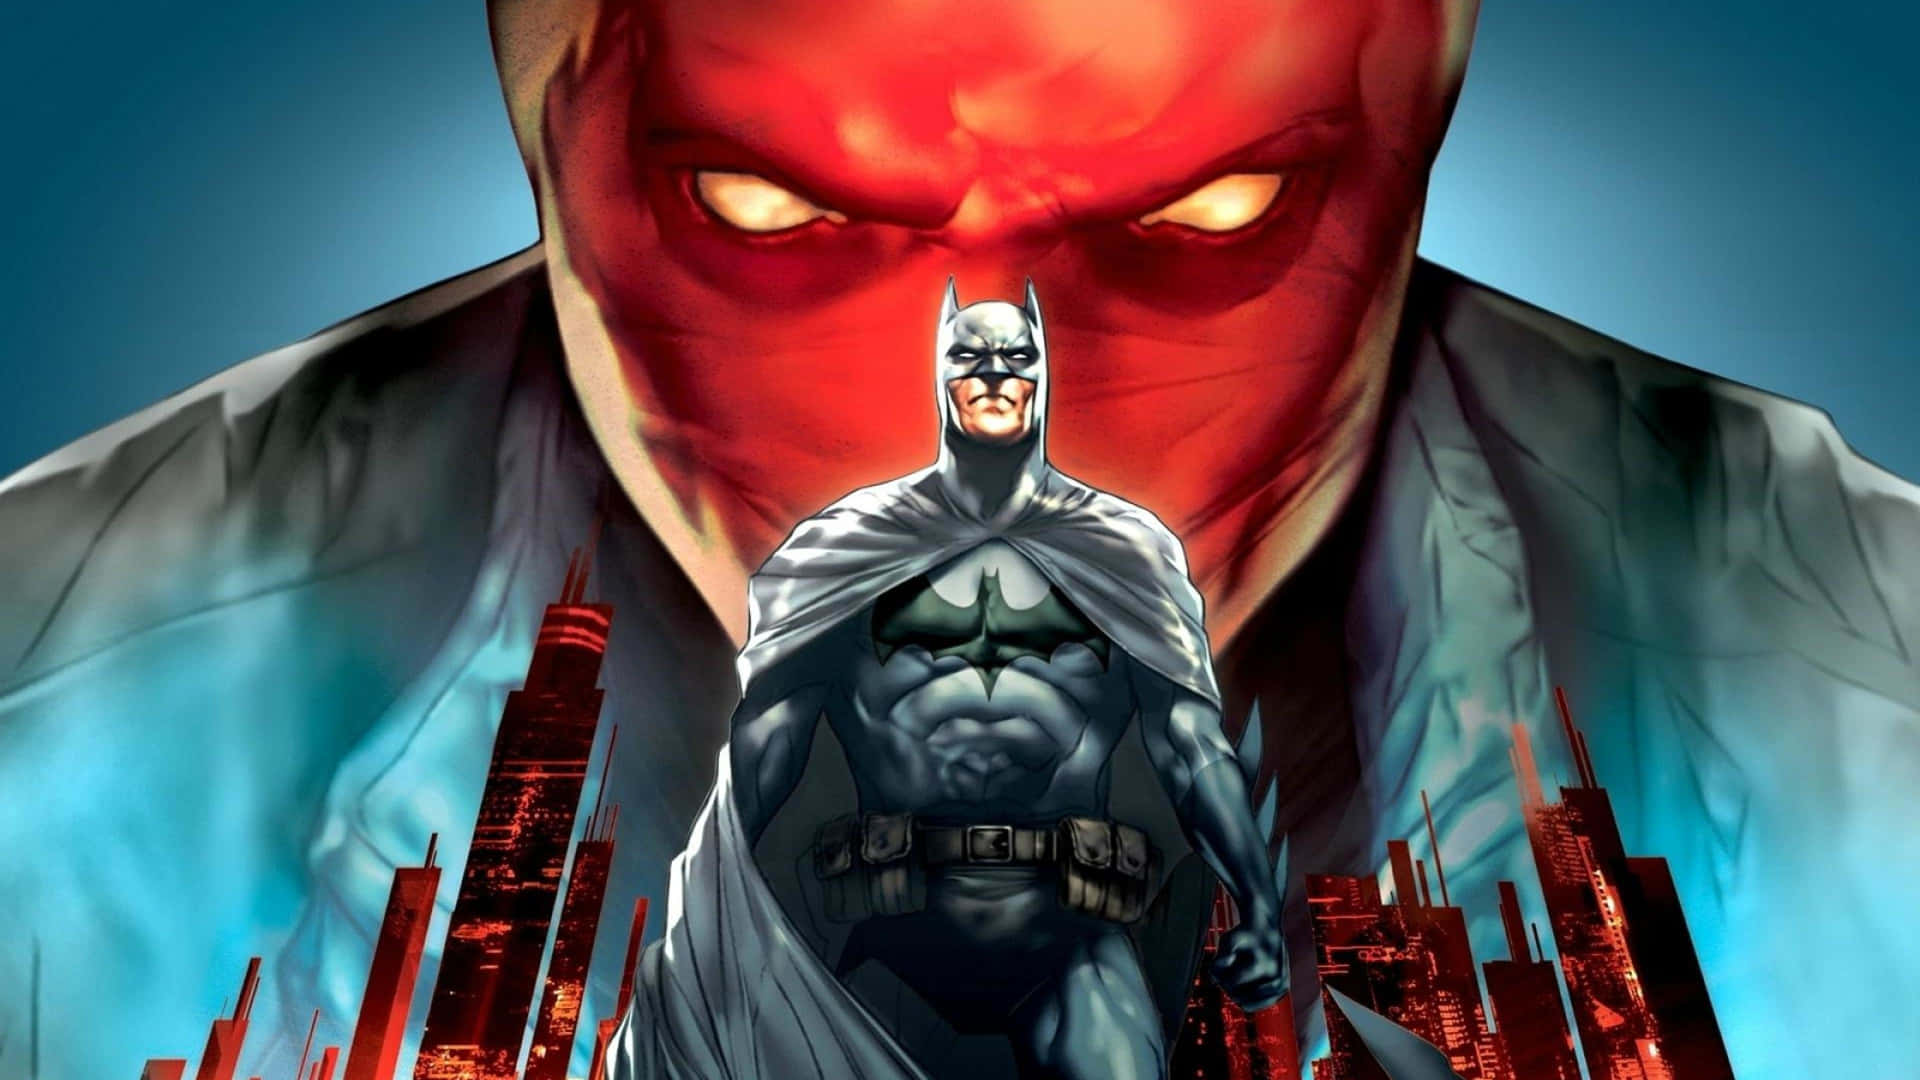 Batman Vs Red Hood - Dc Comics